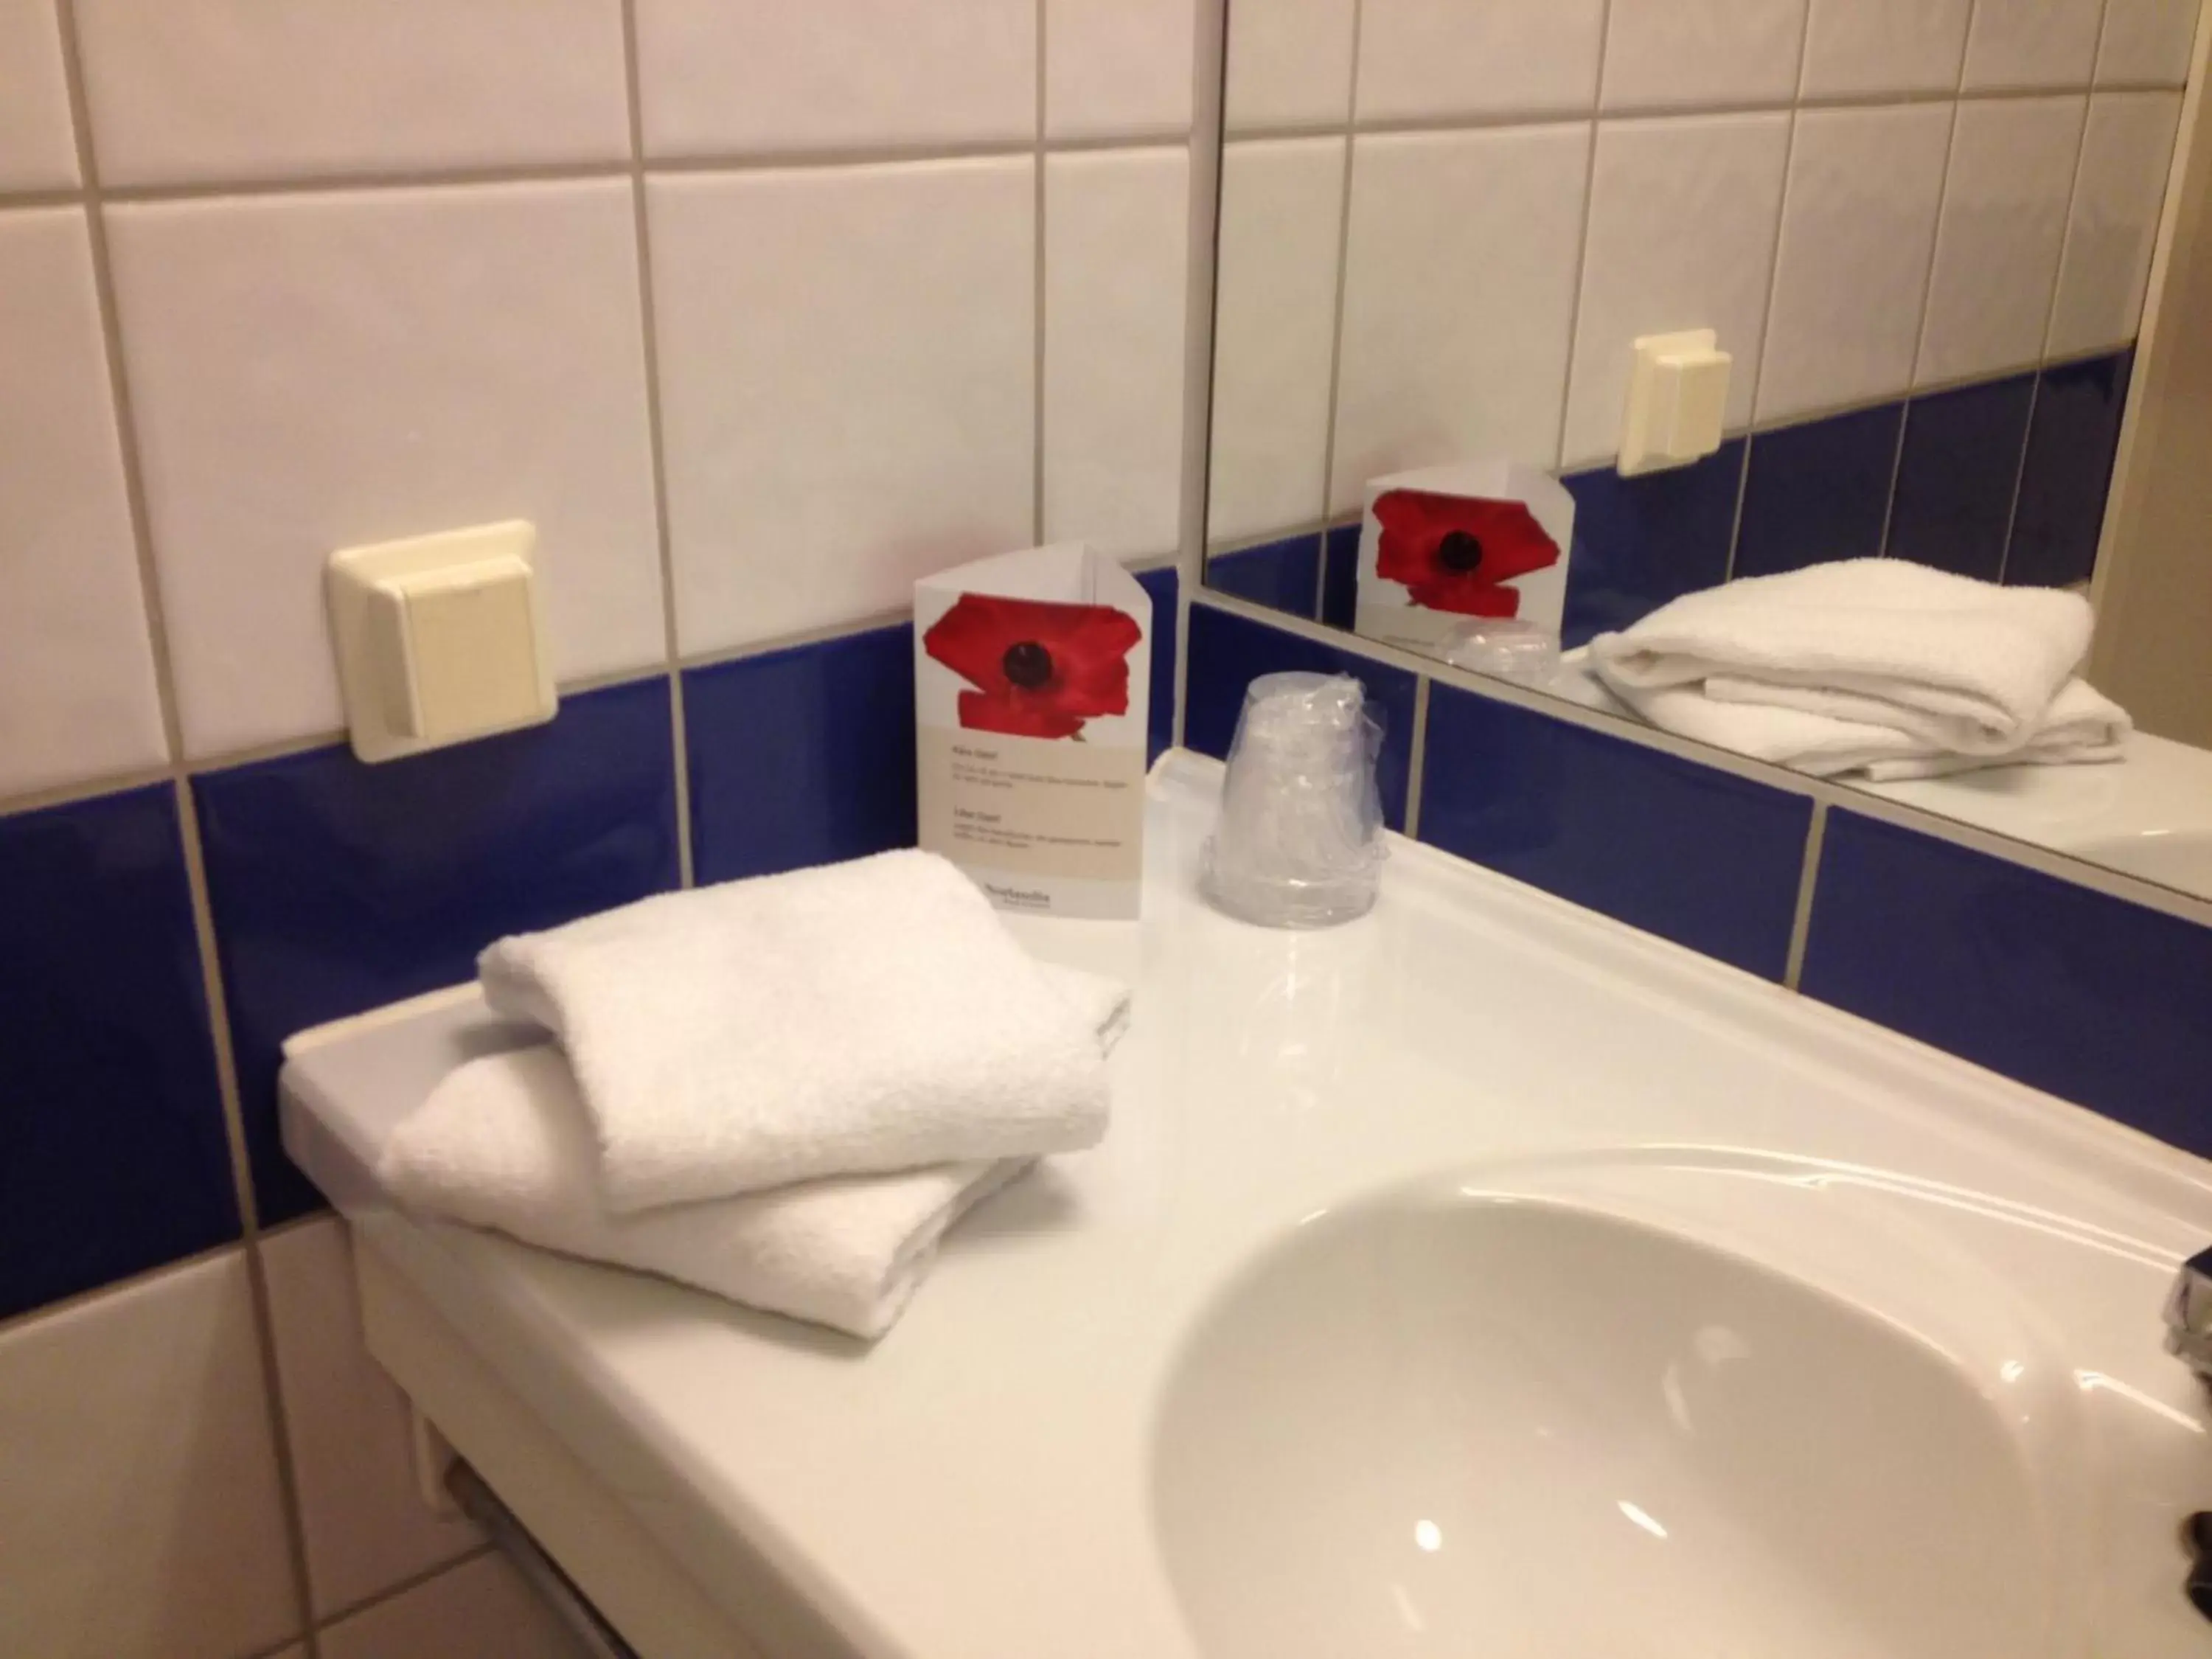 Bathroom in Thon Partner Hotel Andrikken